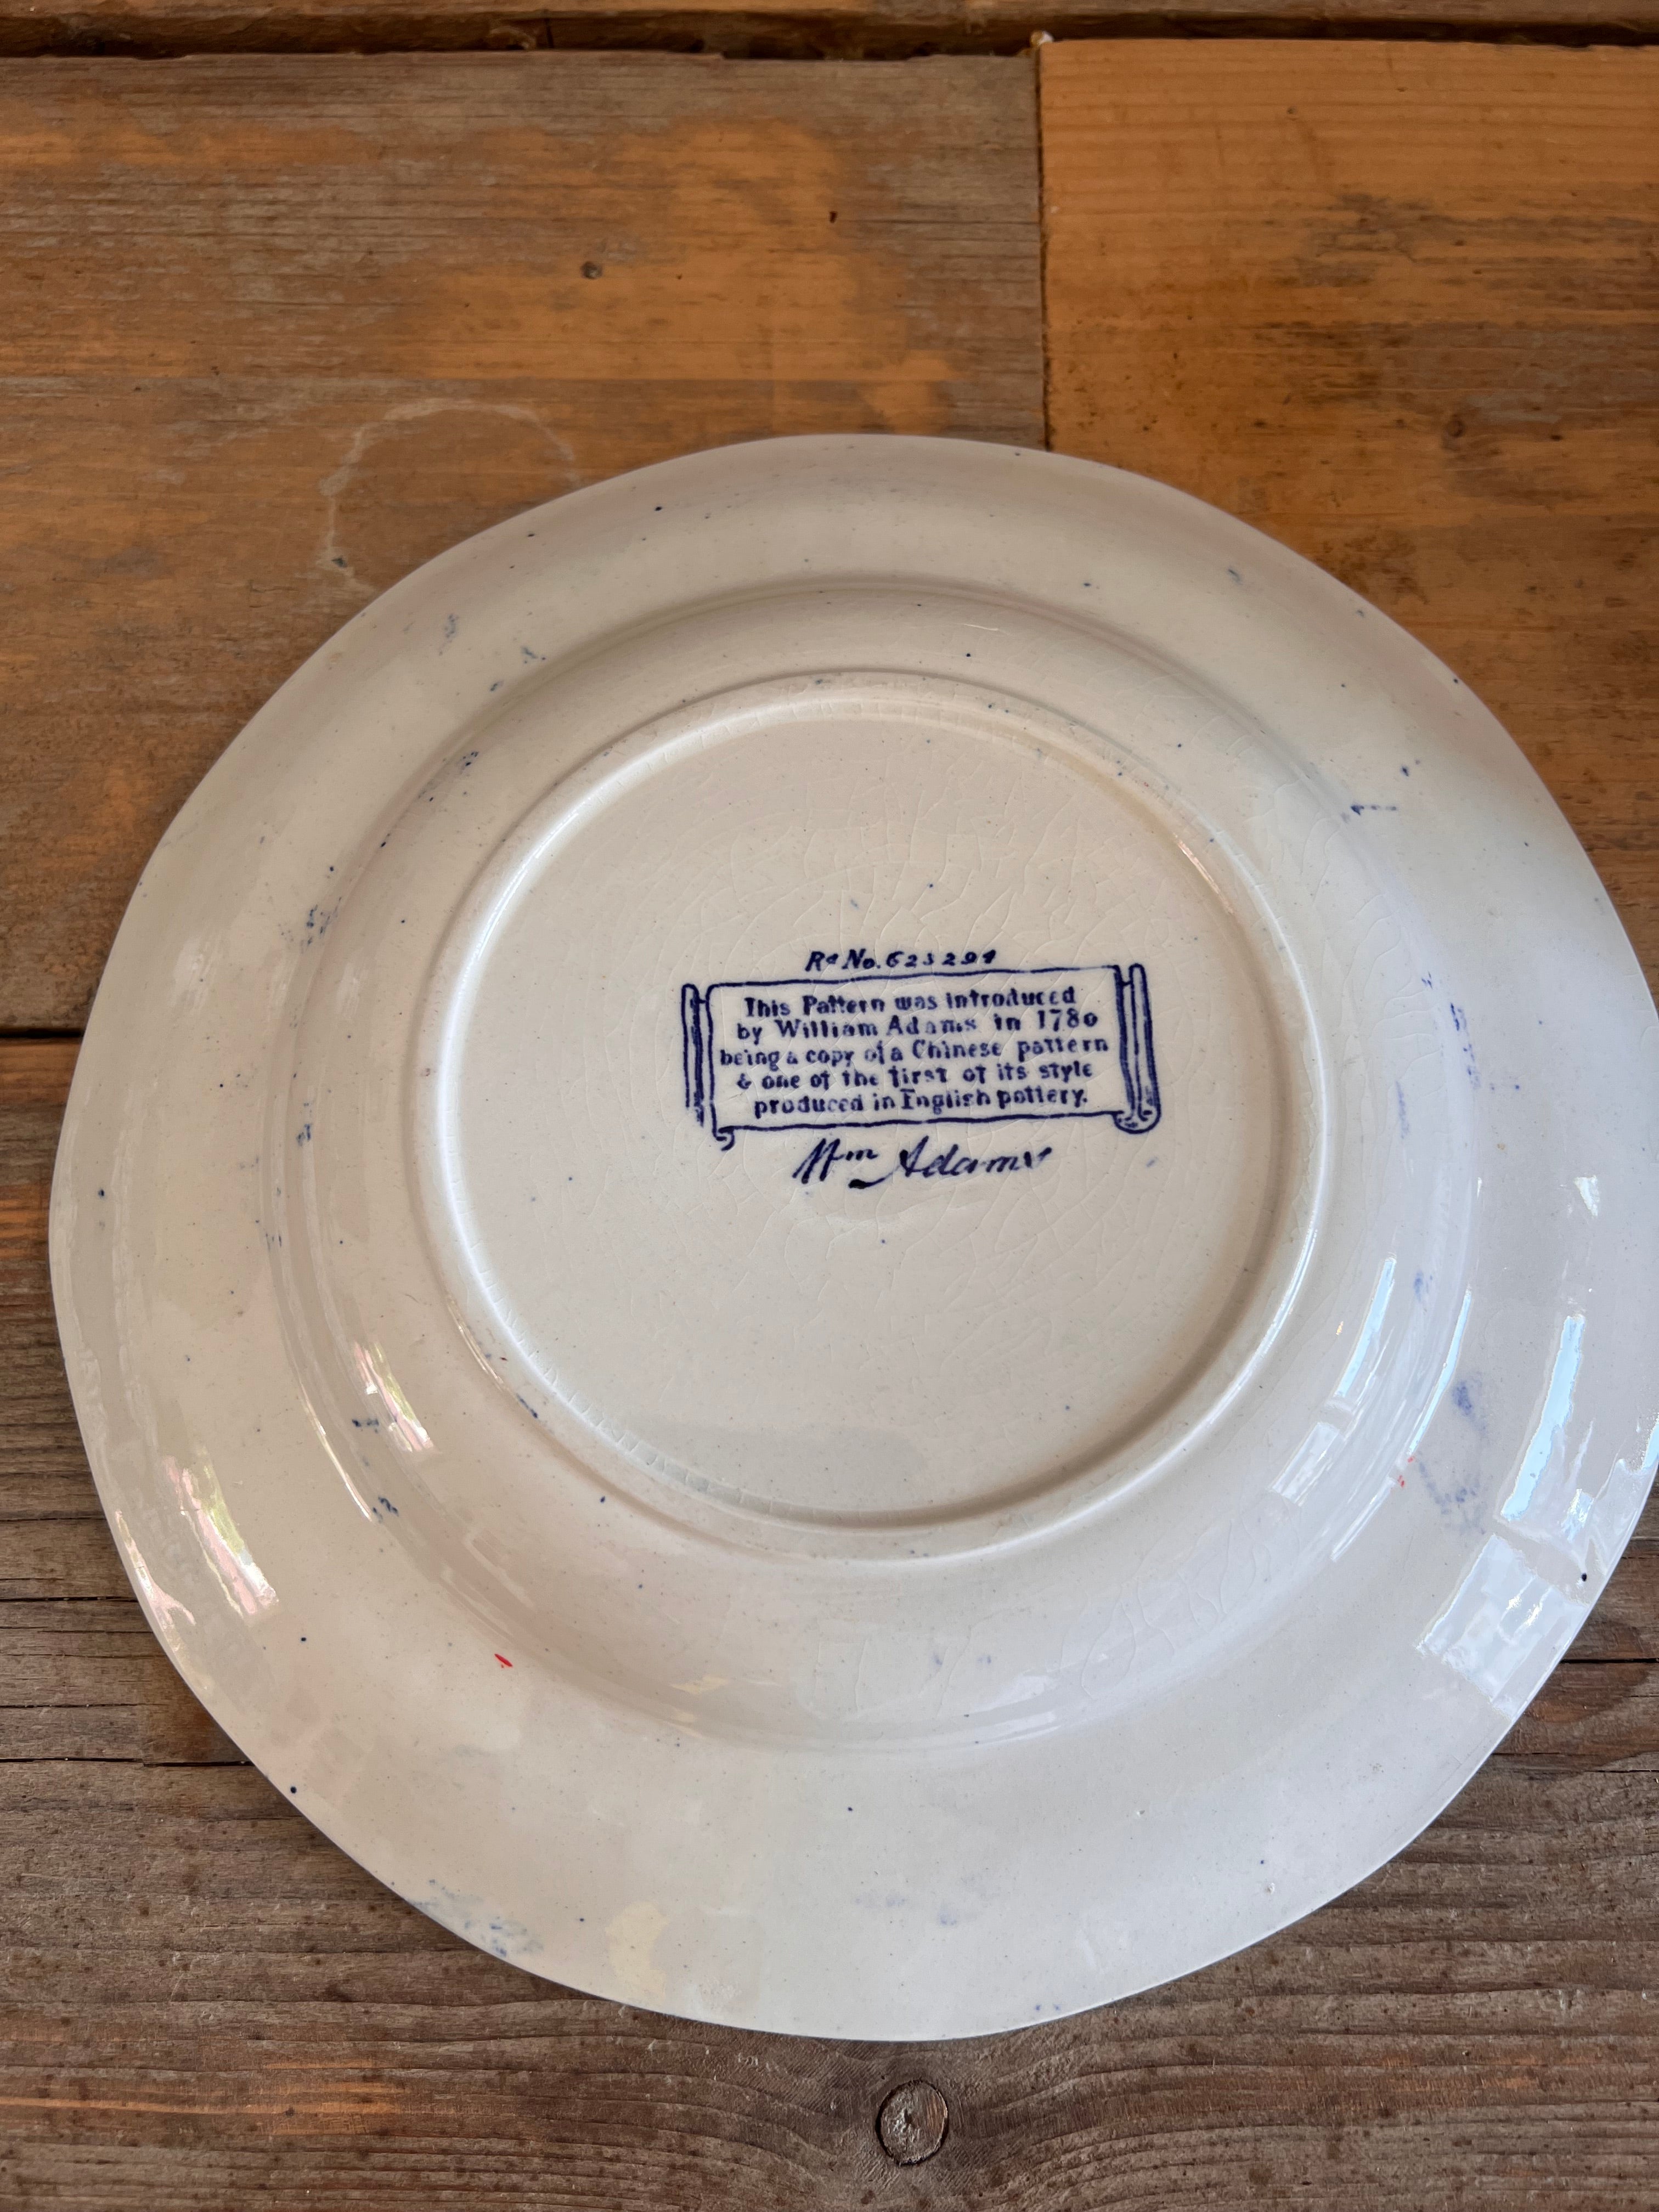 William Adams Blue bird soup plate